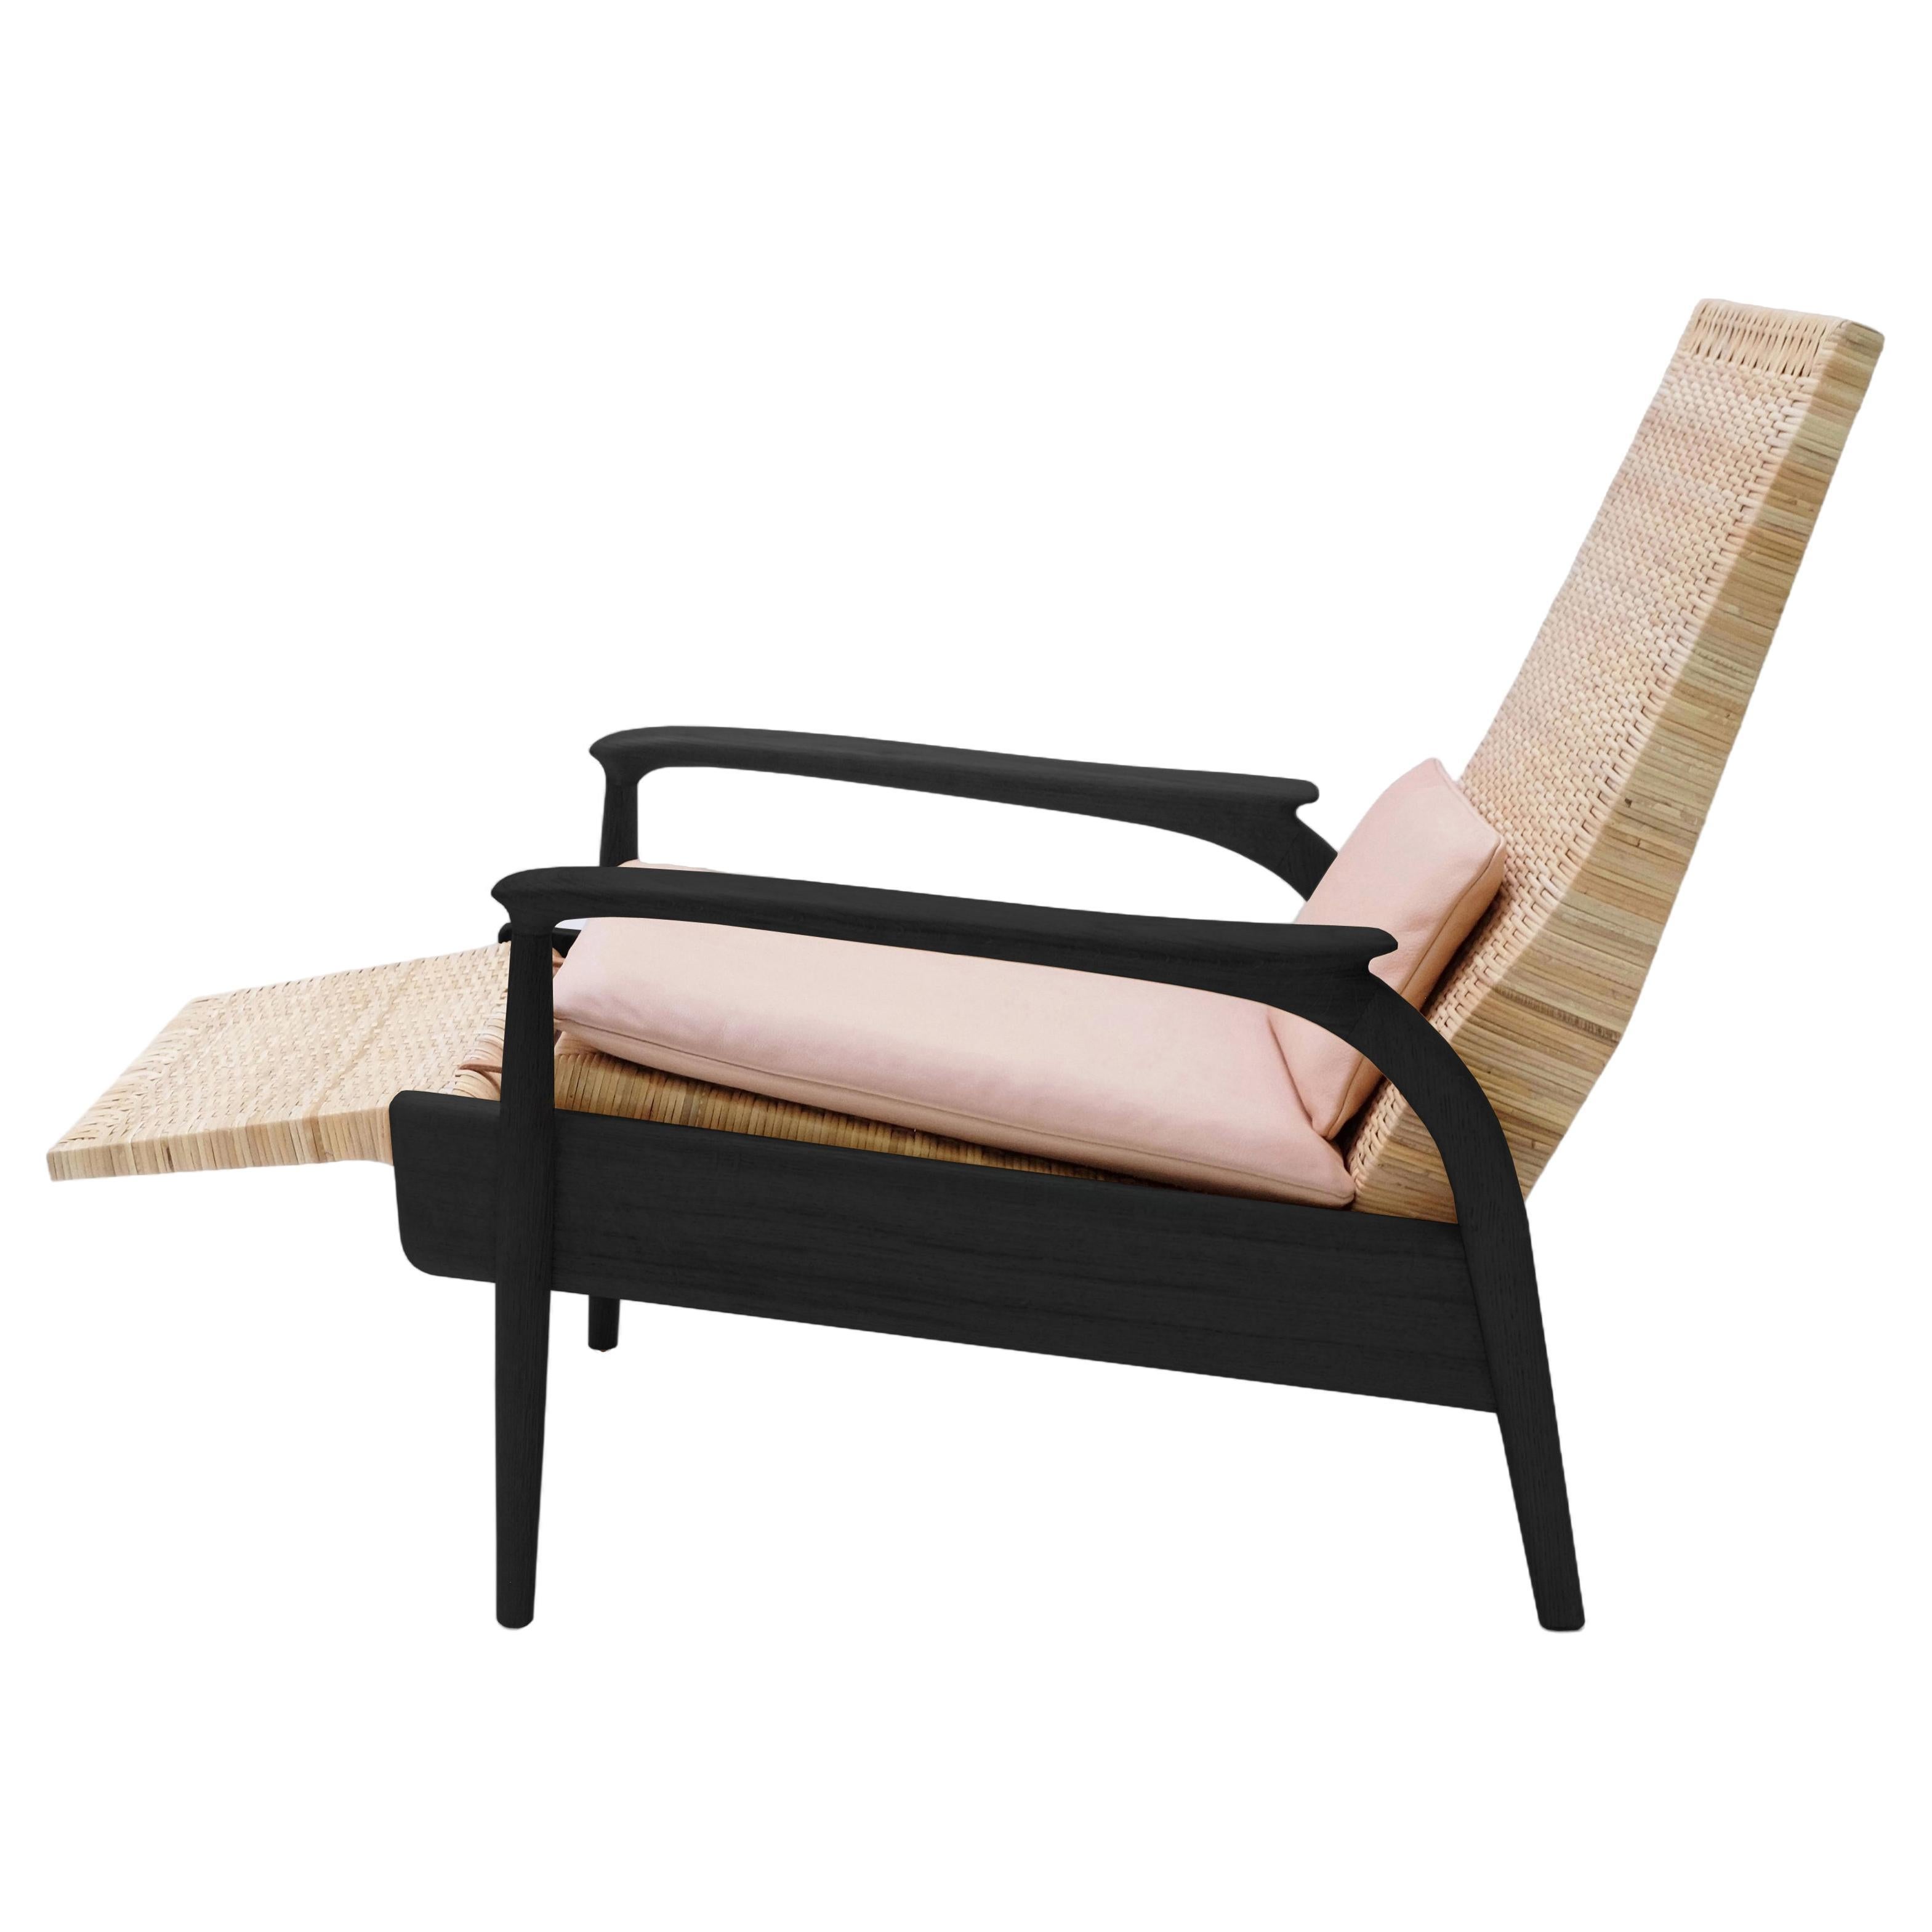 Chaise longue faite sur mesure, chêne noirci naturel, canne naturelle, coussins en cuir